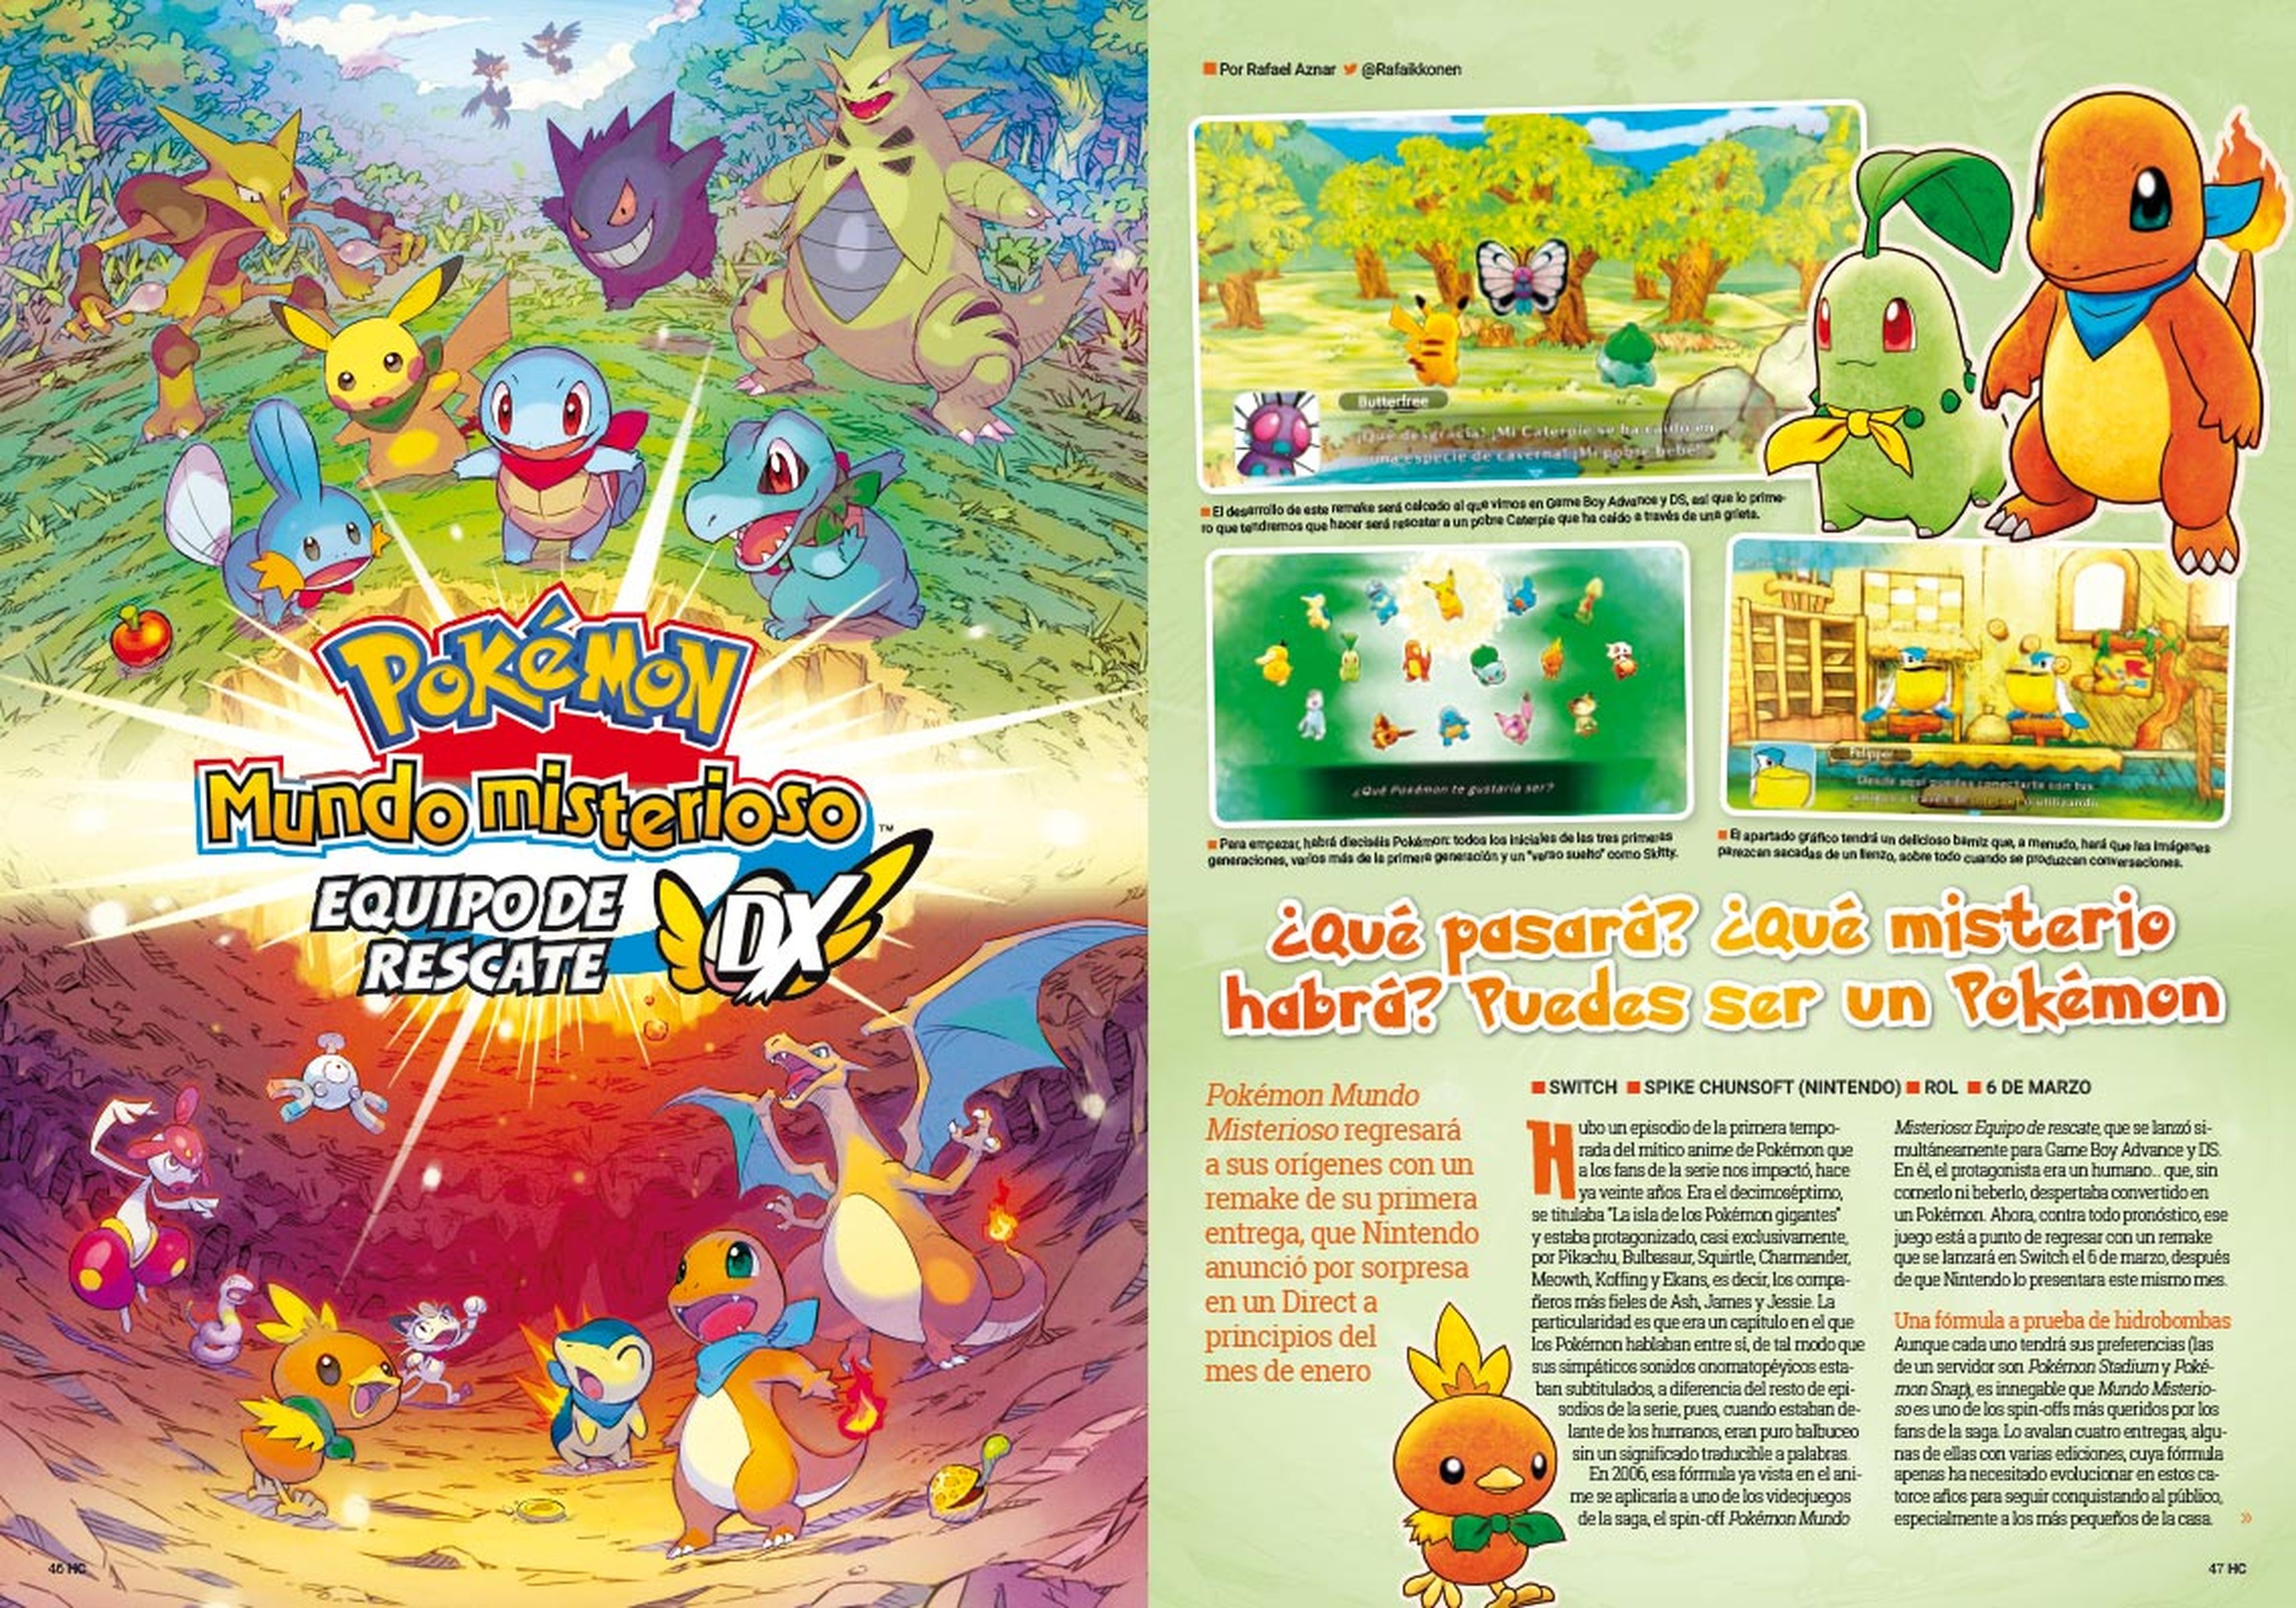 Hobby Consolas 343, a la venta con pósters de Darksiders y Pokémon